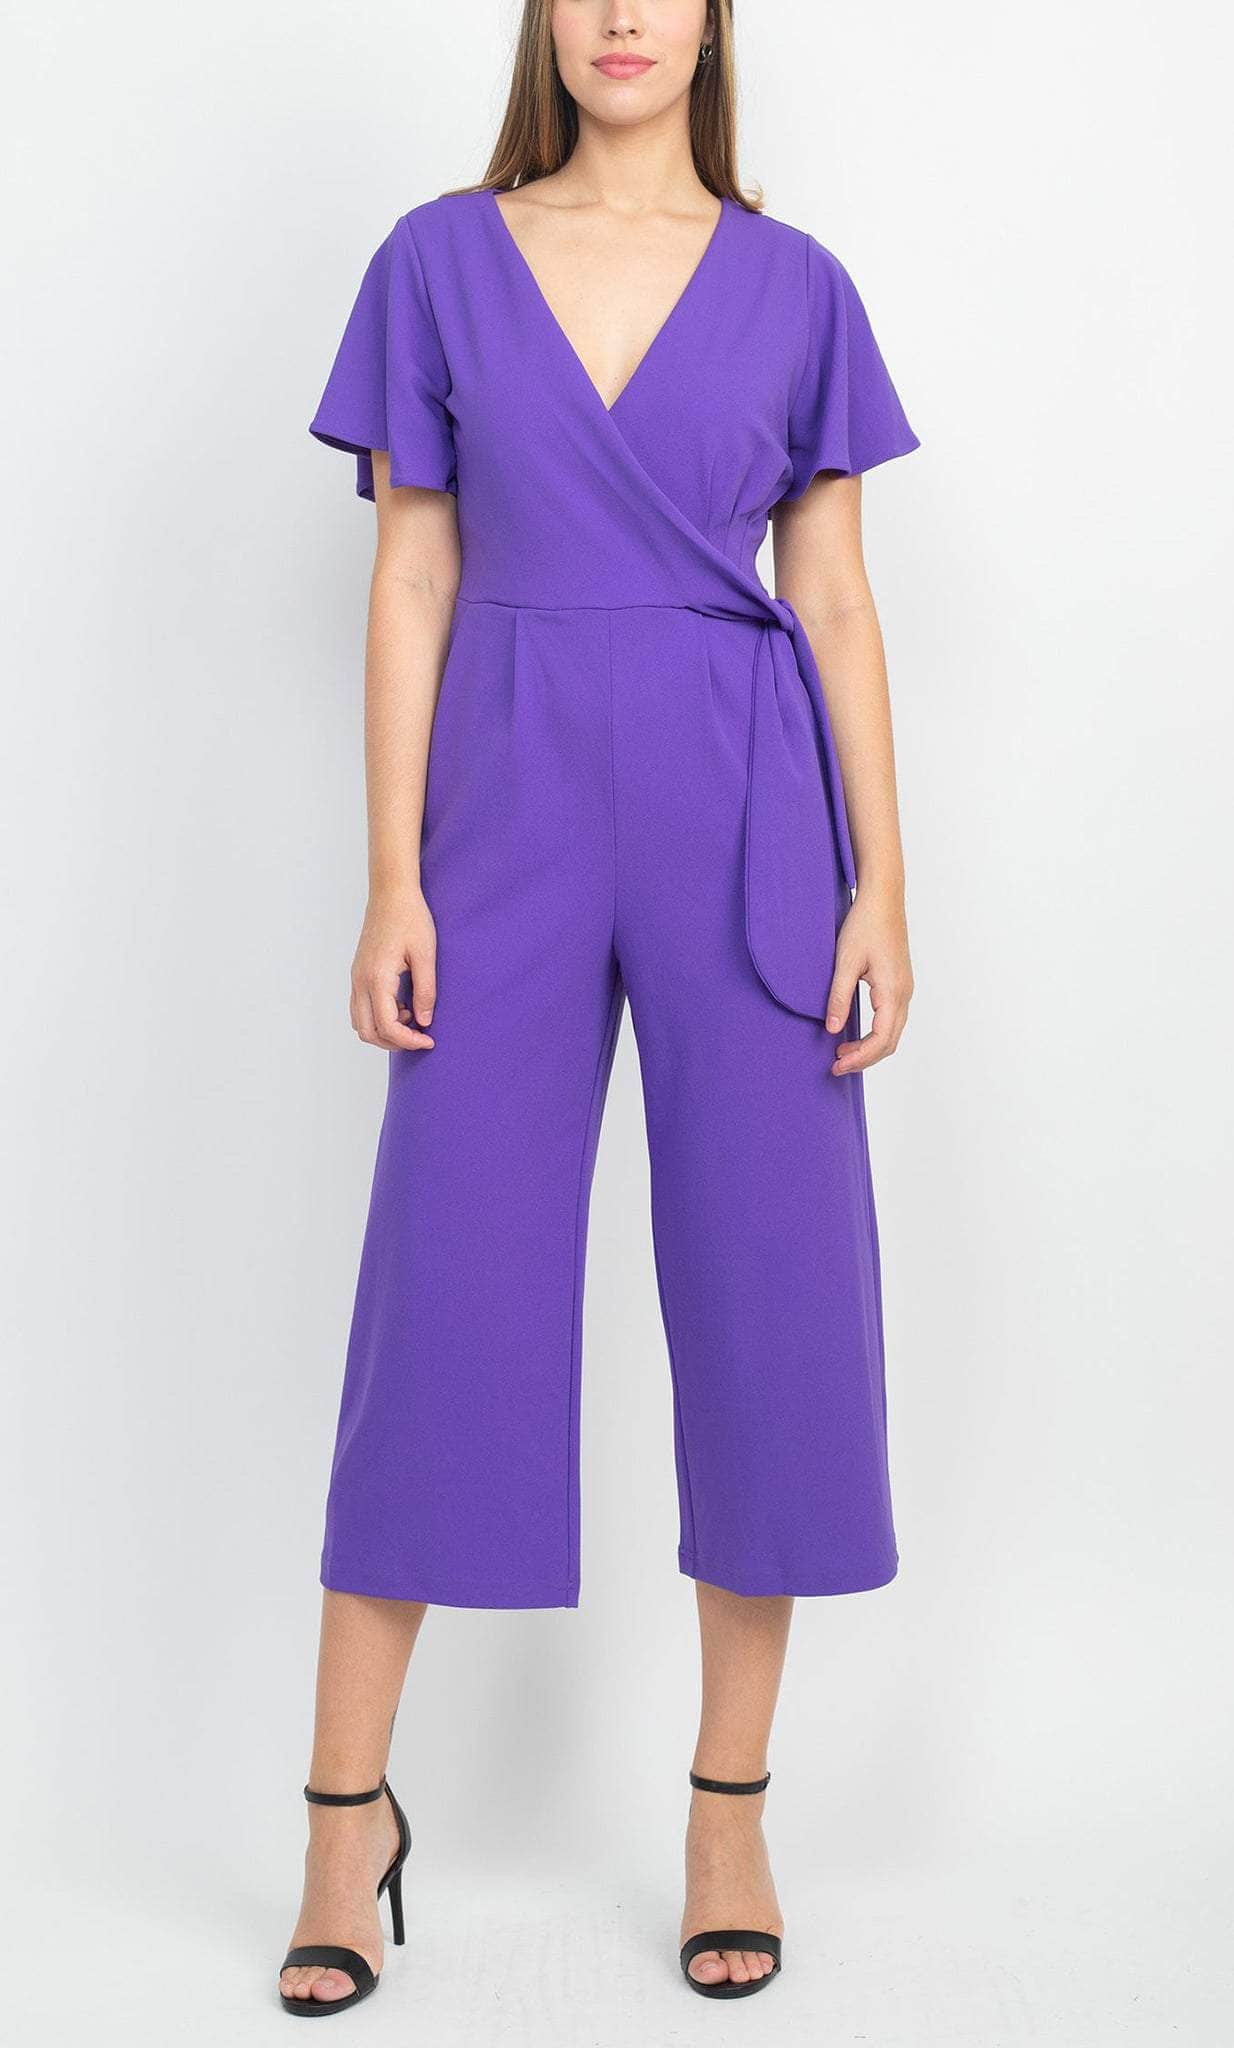 Tahari Asl 2AM503 - Short Sleeve V-Neck Jumpsuit Formal Pantsuits 10 / Ultra Violet